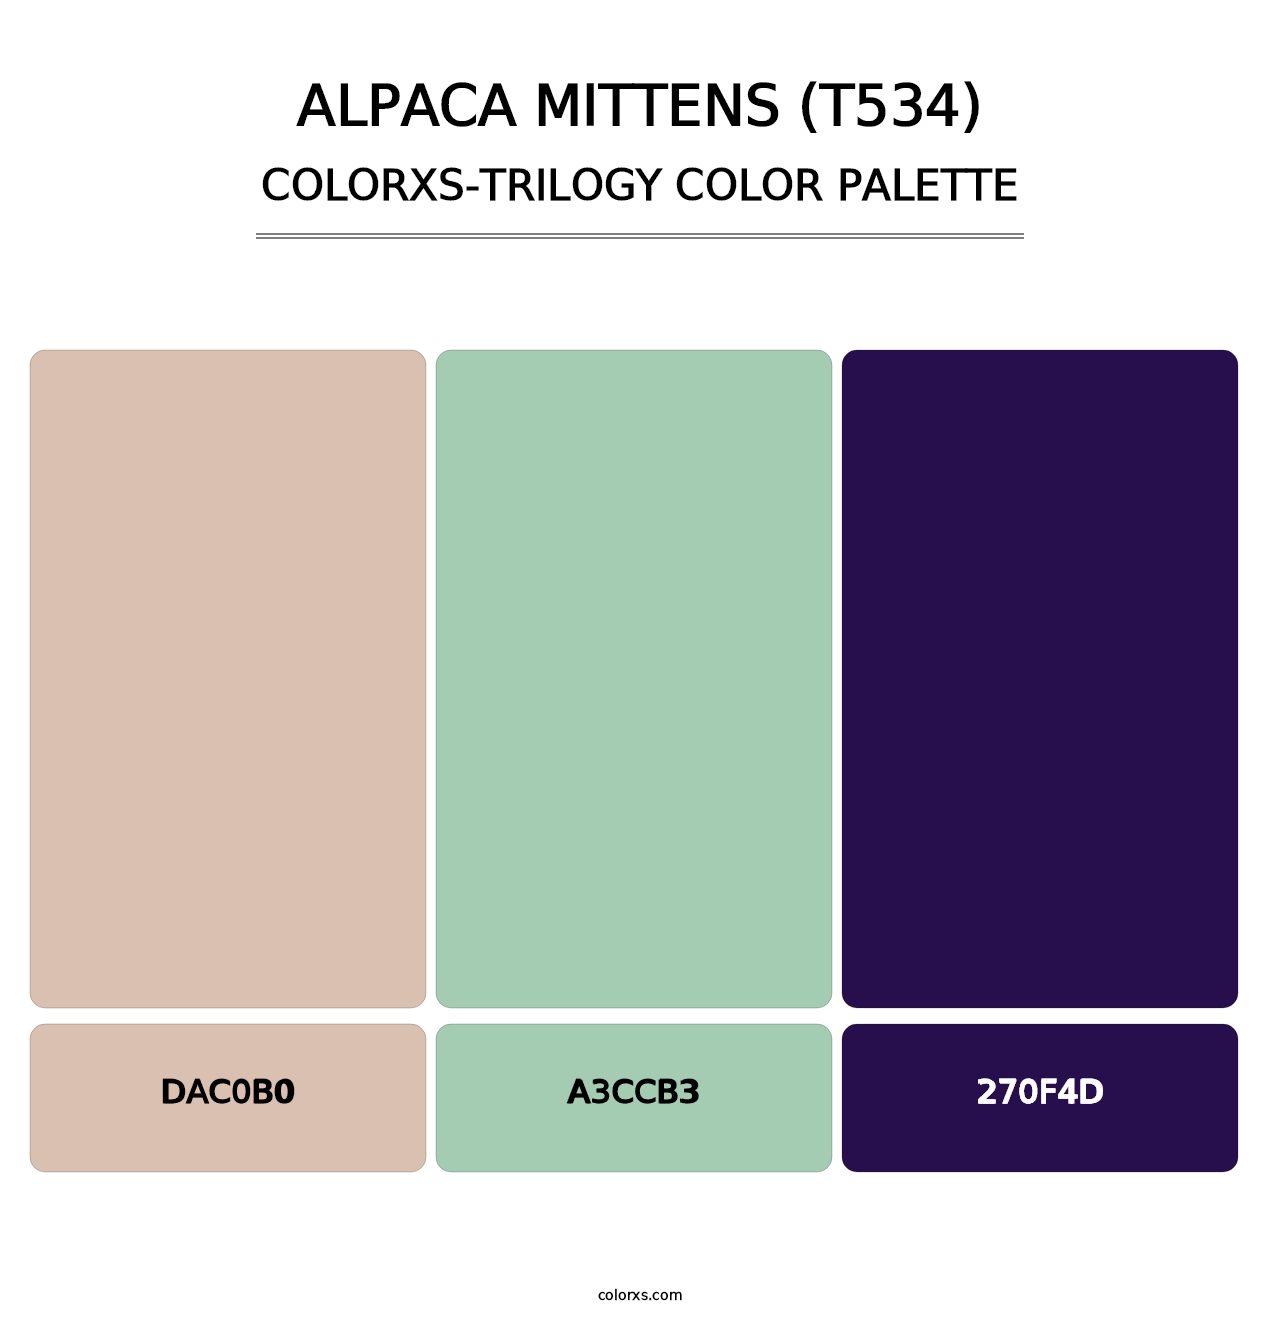 Alpaca Mittens (T534) - Colorxs Trilogy Palette